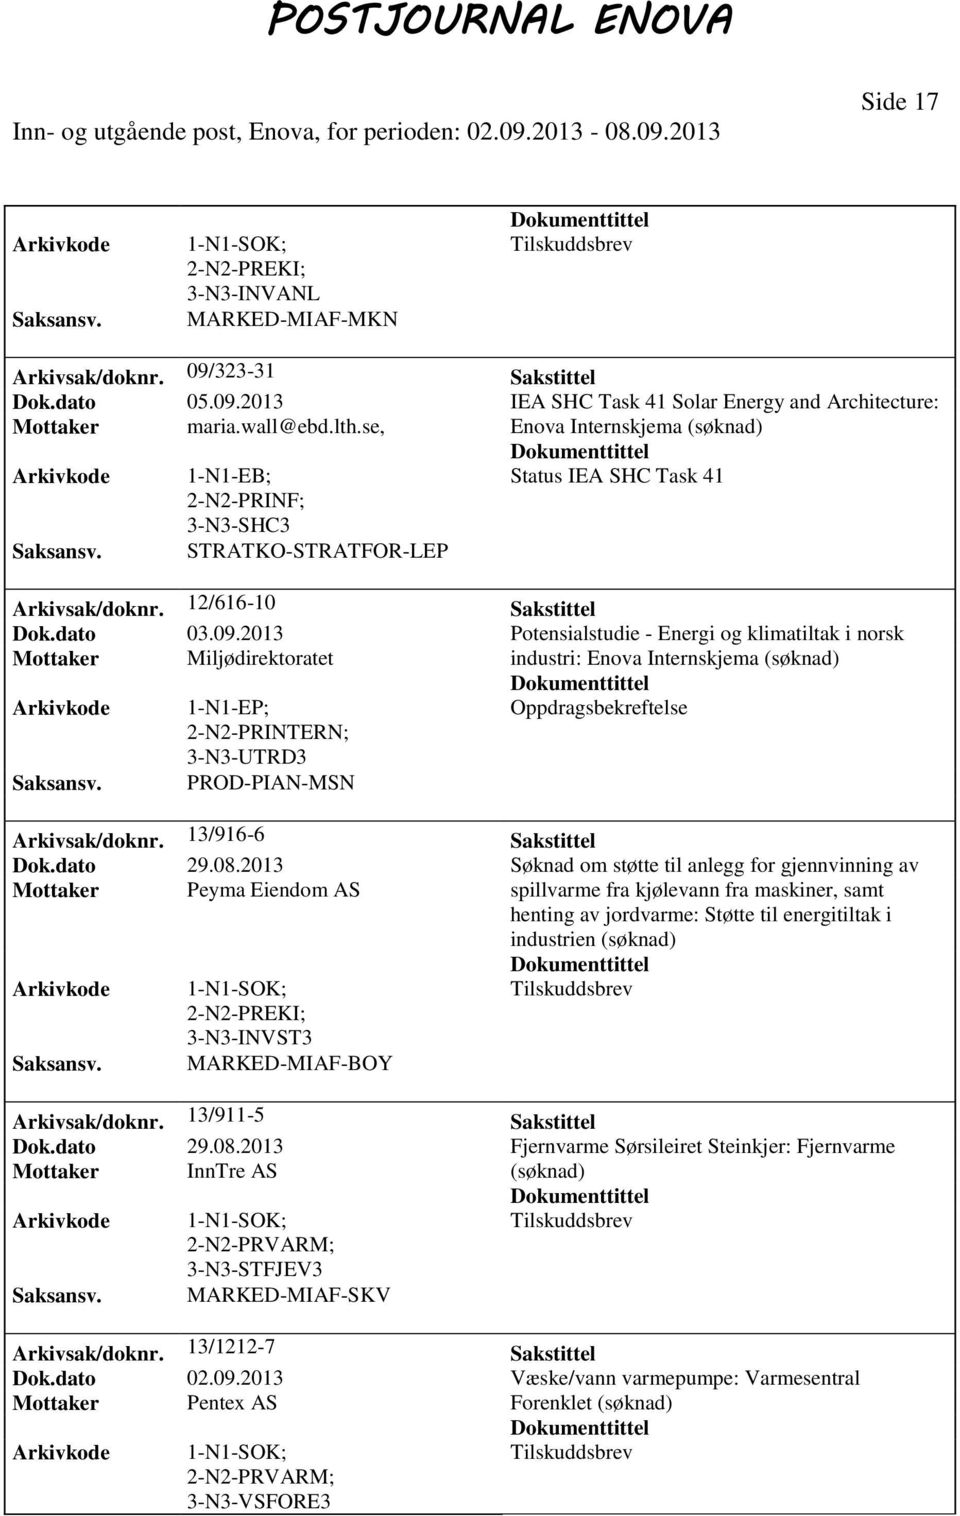 2013 Potensialstudie - Energi og klimatiltak i norsk Mottaker Miljødirektoratet industri: Enova Internskjema 1-N1-EP; Oppdragsbekreftelse PRINTERN; 3-N3-UTRD3 PROD-PIAN-MSN Arkivsak/doknr.